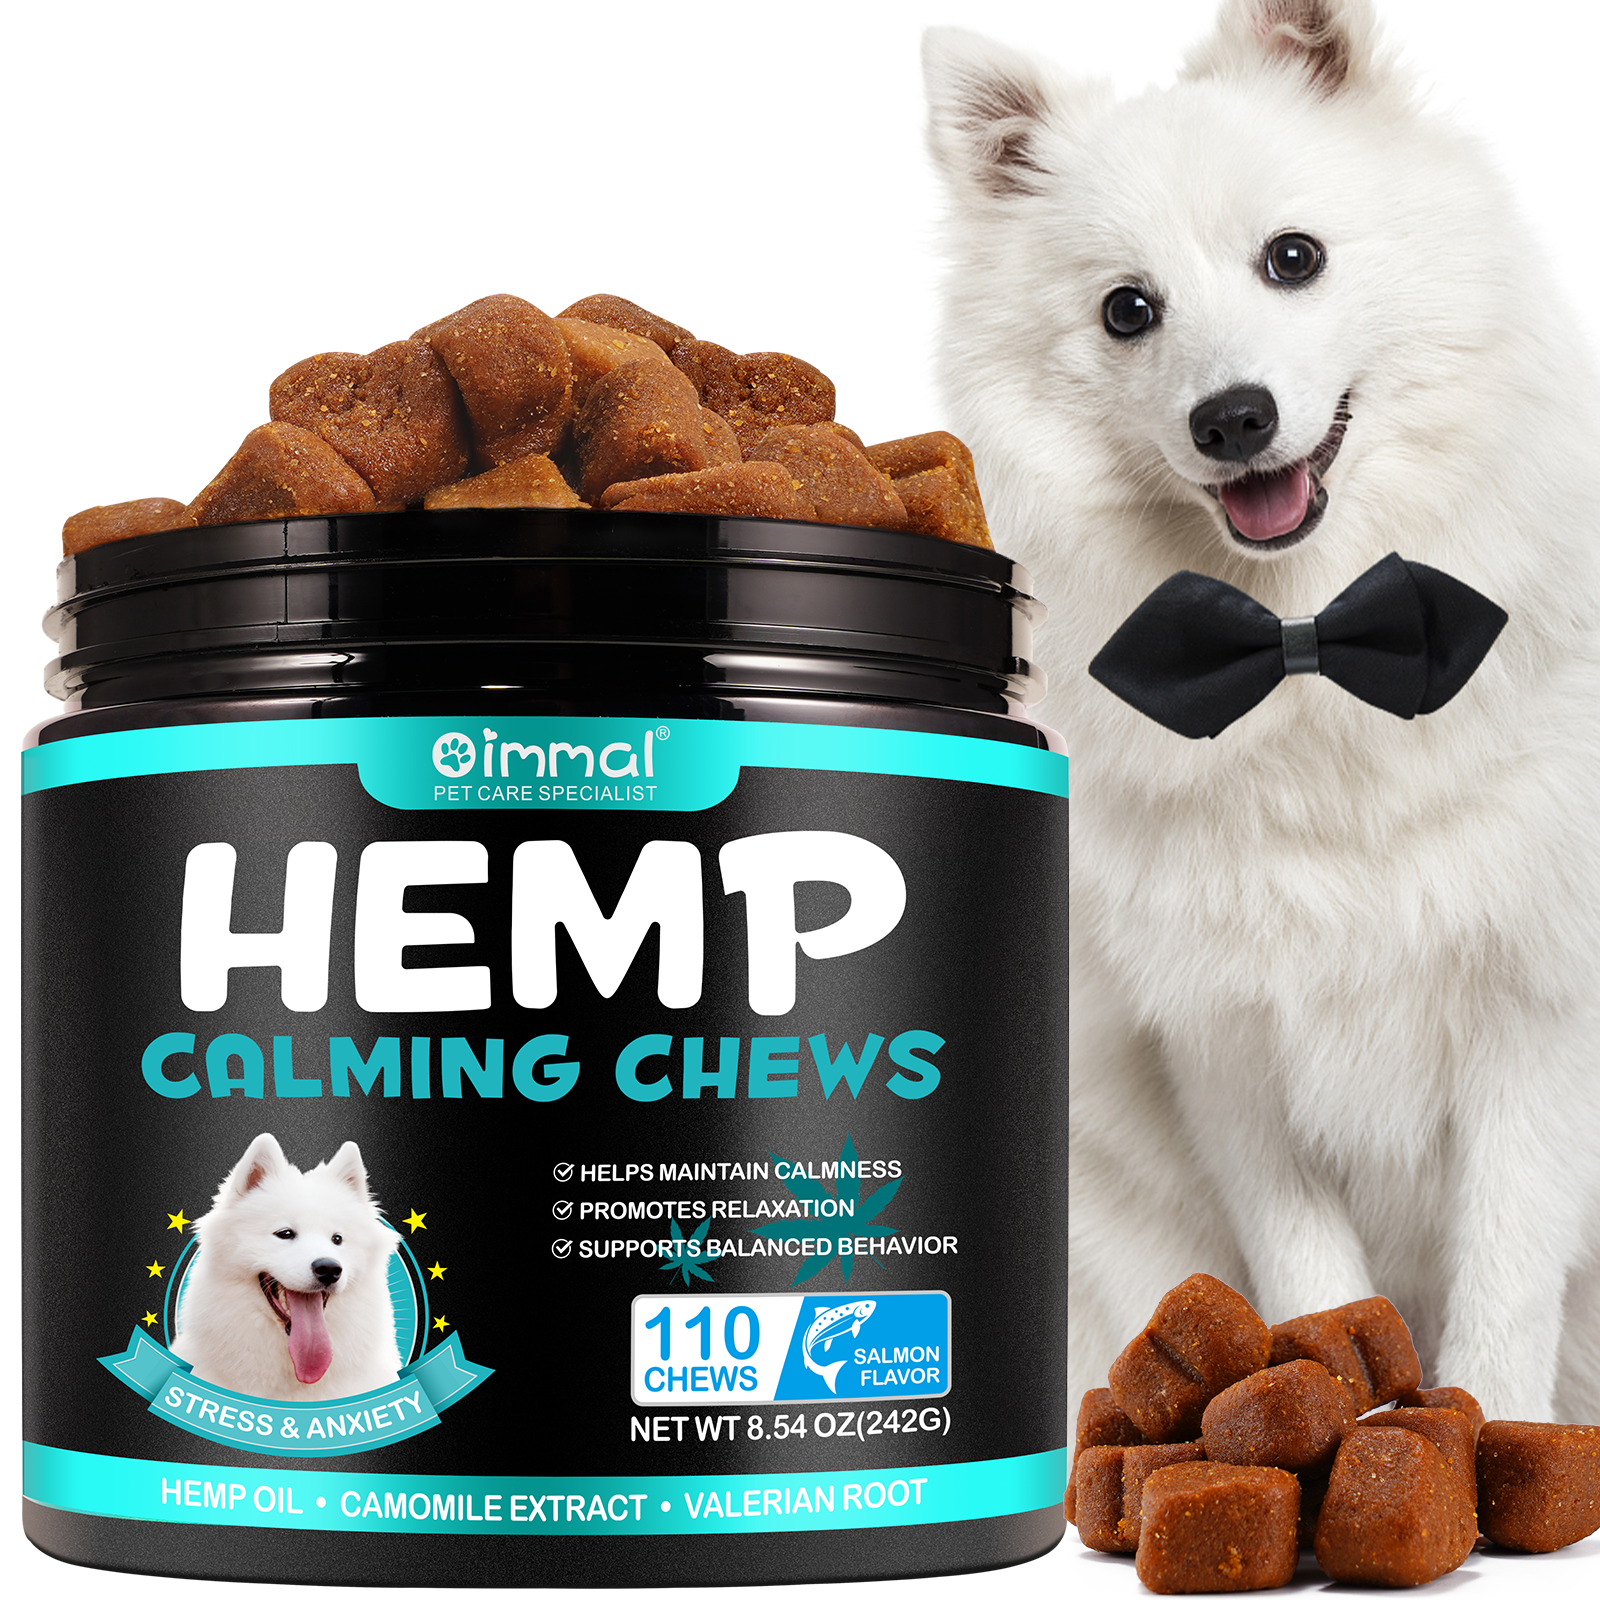 Oimmal Hemp Calming Chews / Salmon Flavor - 2 Packs